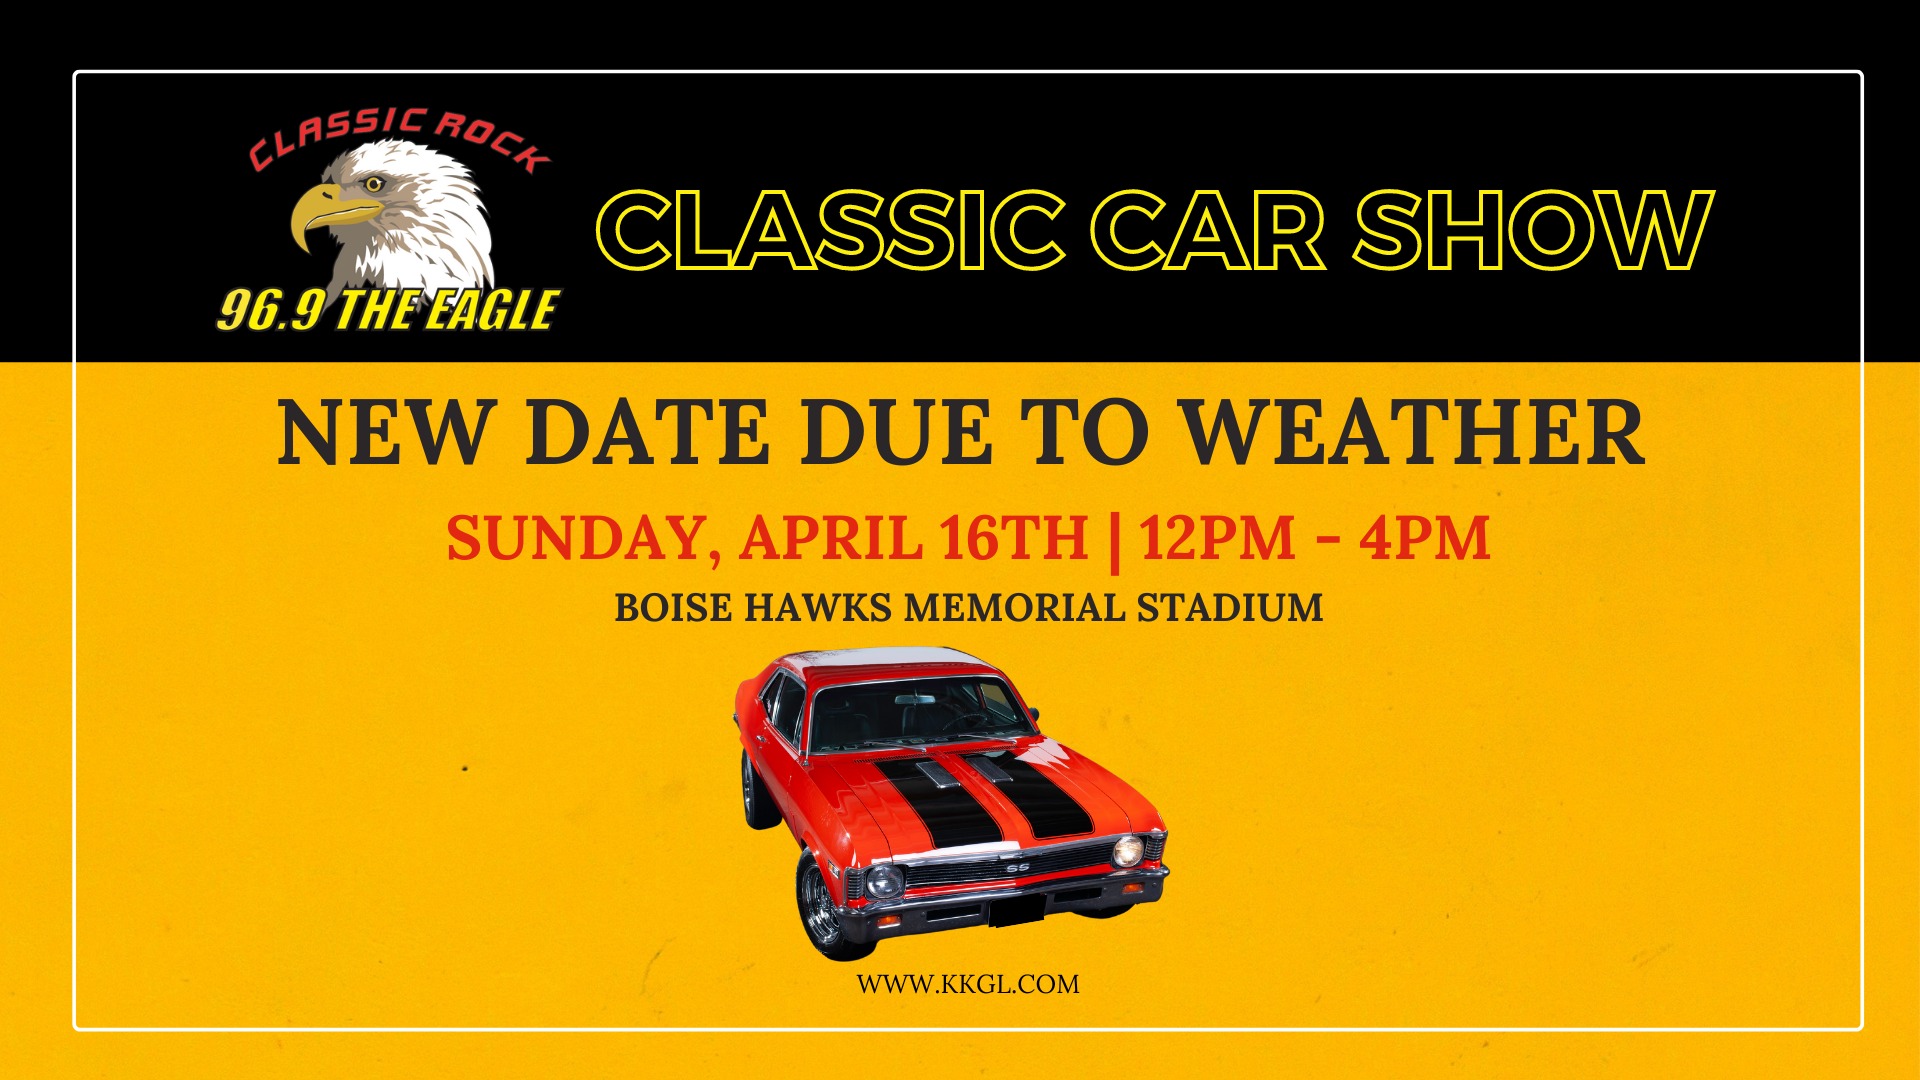 The Eagle Classic Car Show